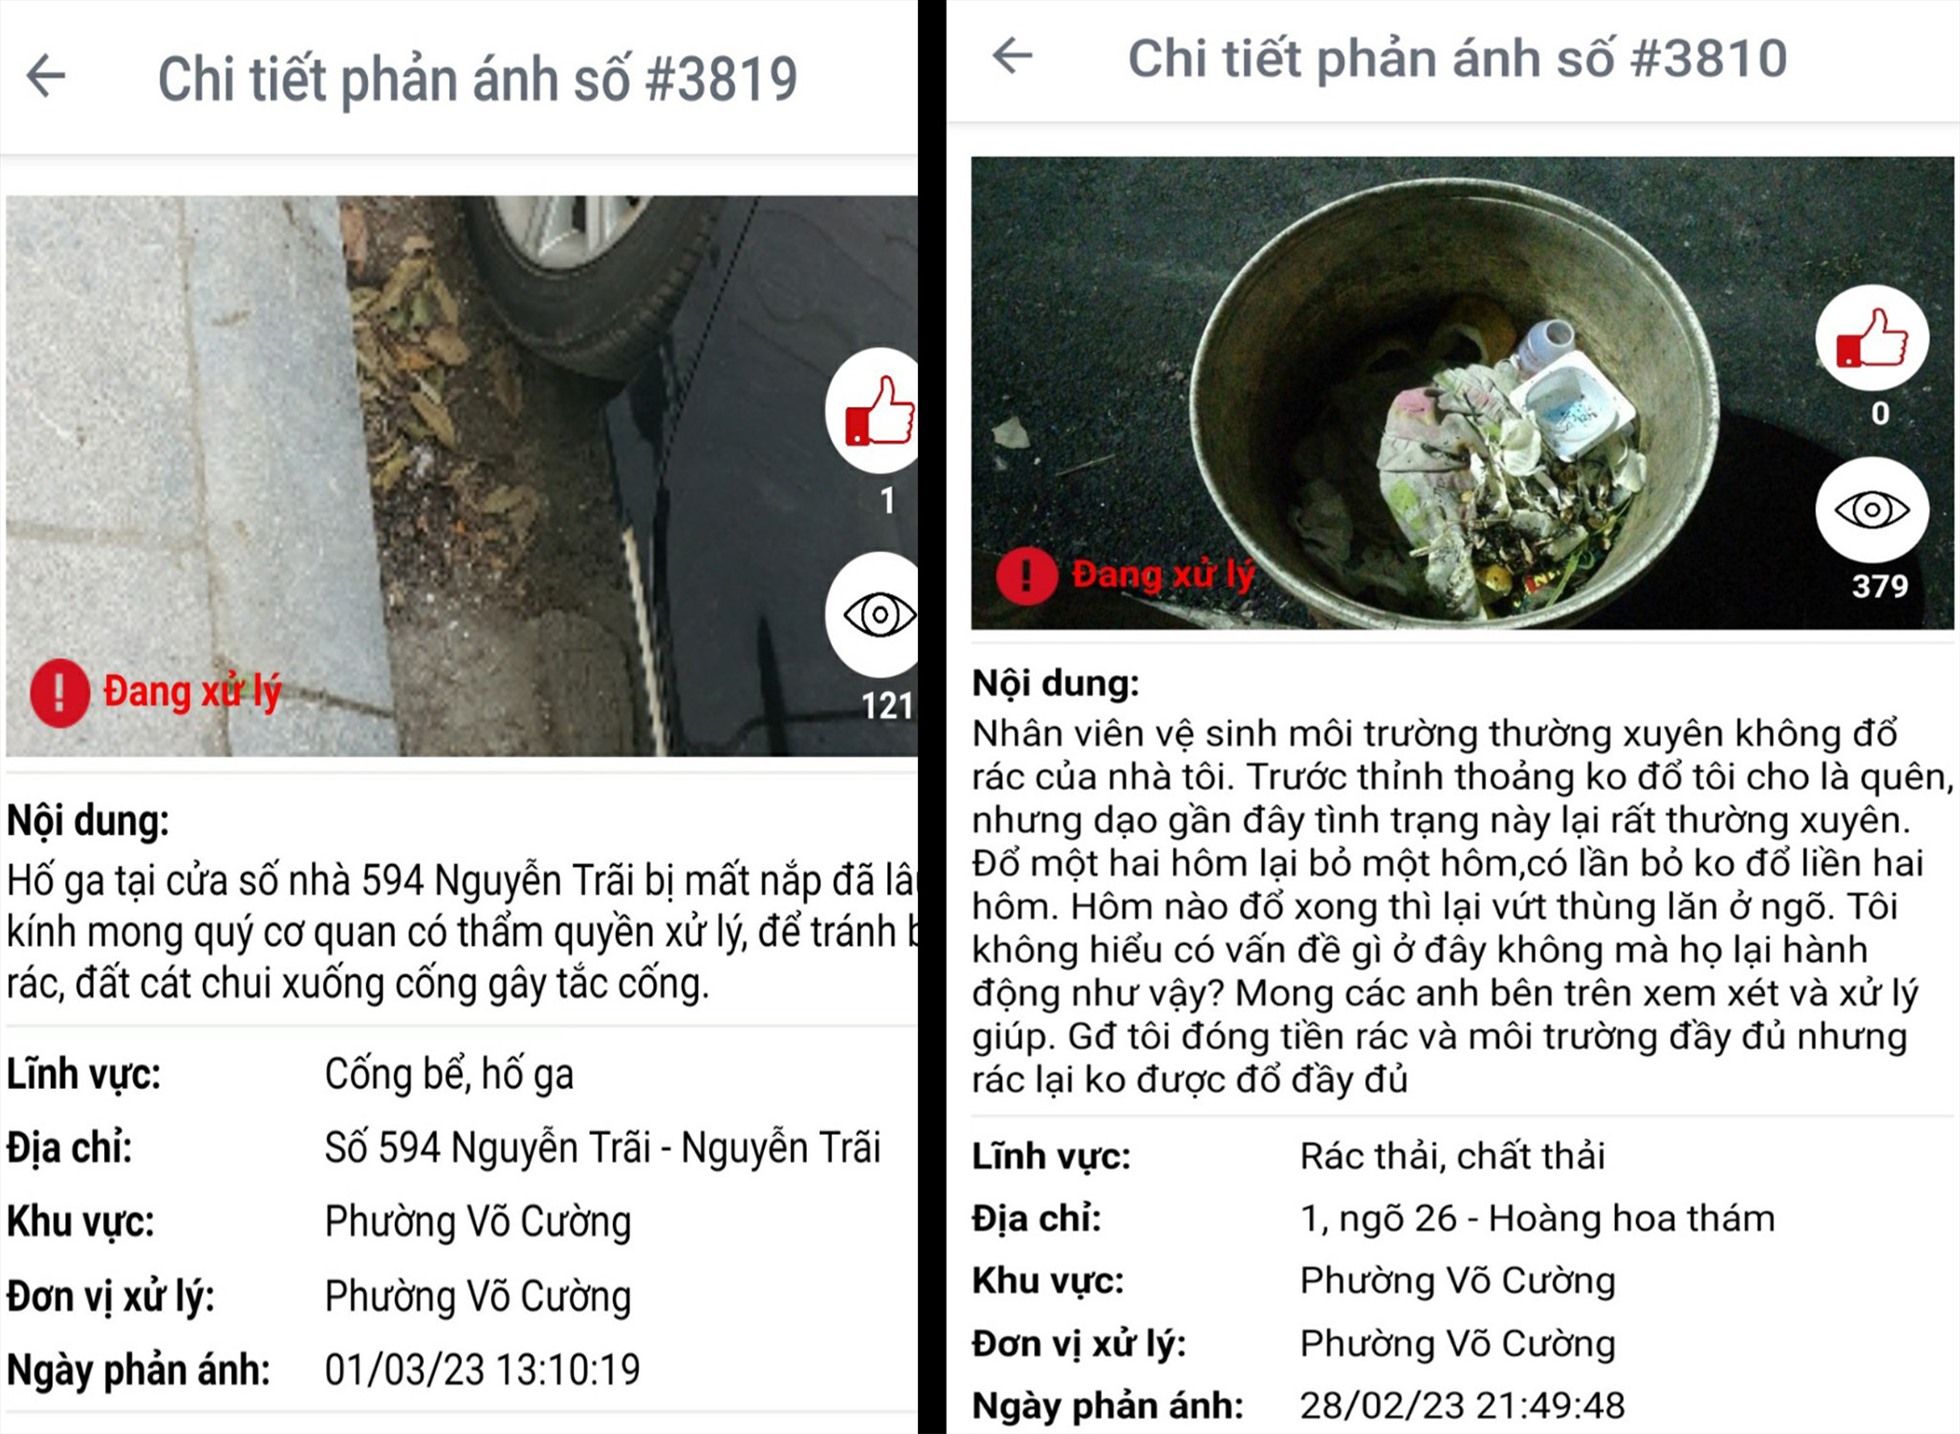 Một số kiến nghị xử lý gần đây của người dân trên phần mềm phản ánh kiến nghị tỉnh Bắc Ninh. Ảnh: Chụp màn hình